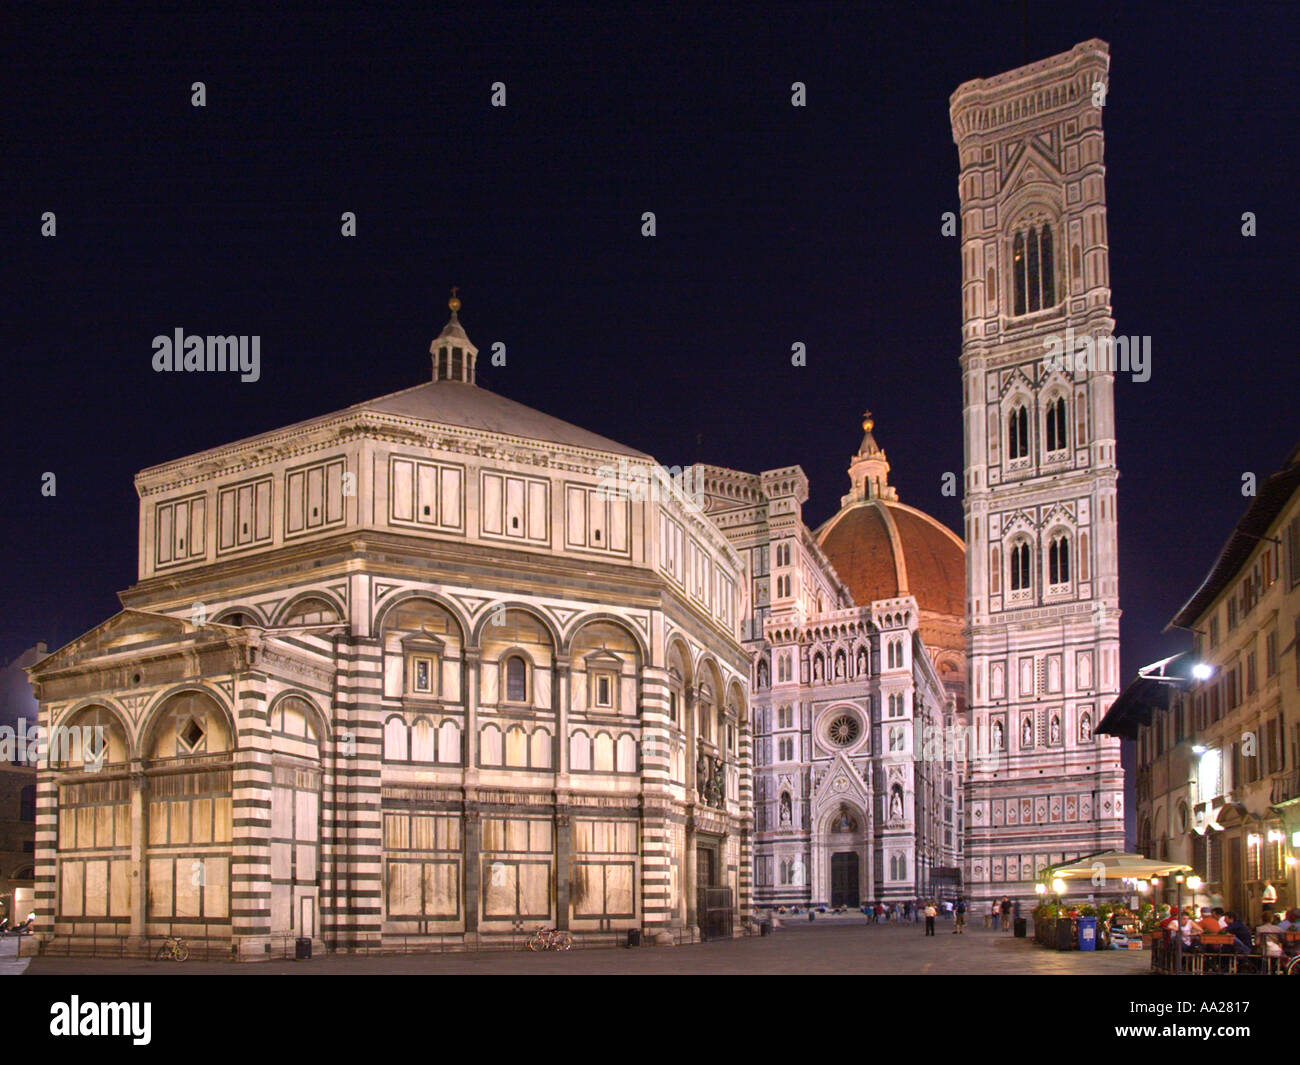 The Duomo (Basilica di Santa Maria del Fiore) and Battistero at night, Piazza di San Giovanni, Florence, Italy Stock Photo